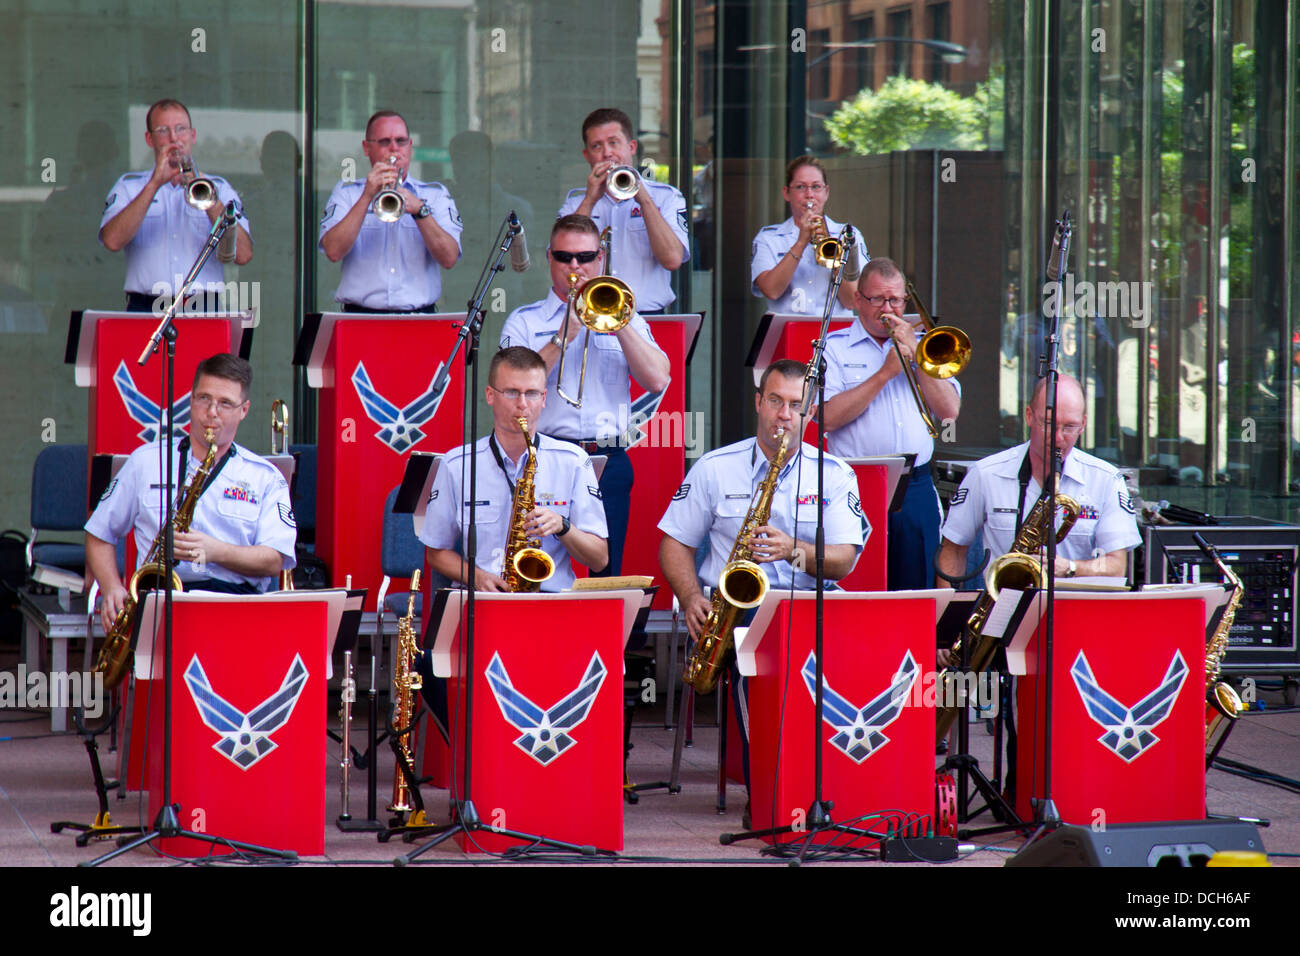 L'US air force de 'Band' Mid-America jouant dans une rue de Chicago, Illinois, États-Unis Banque D'Images